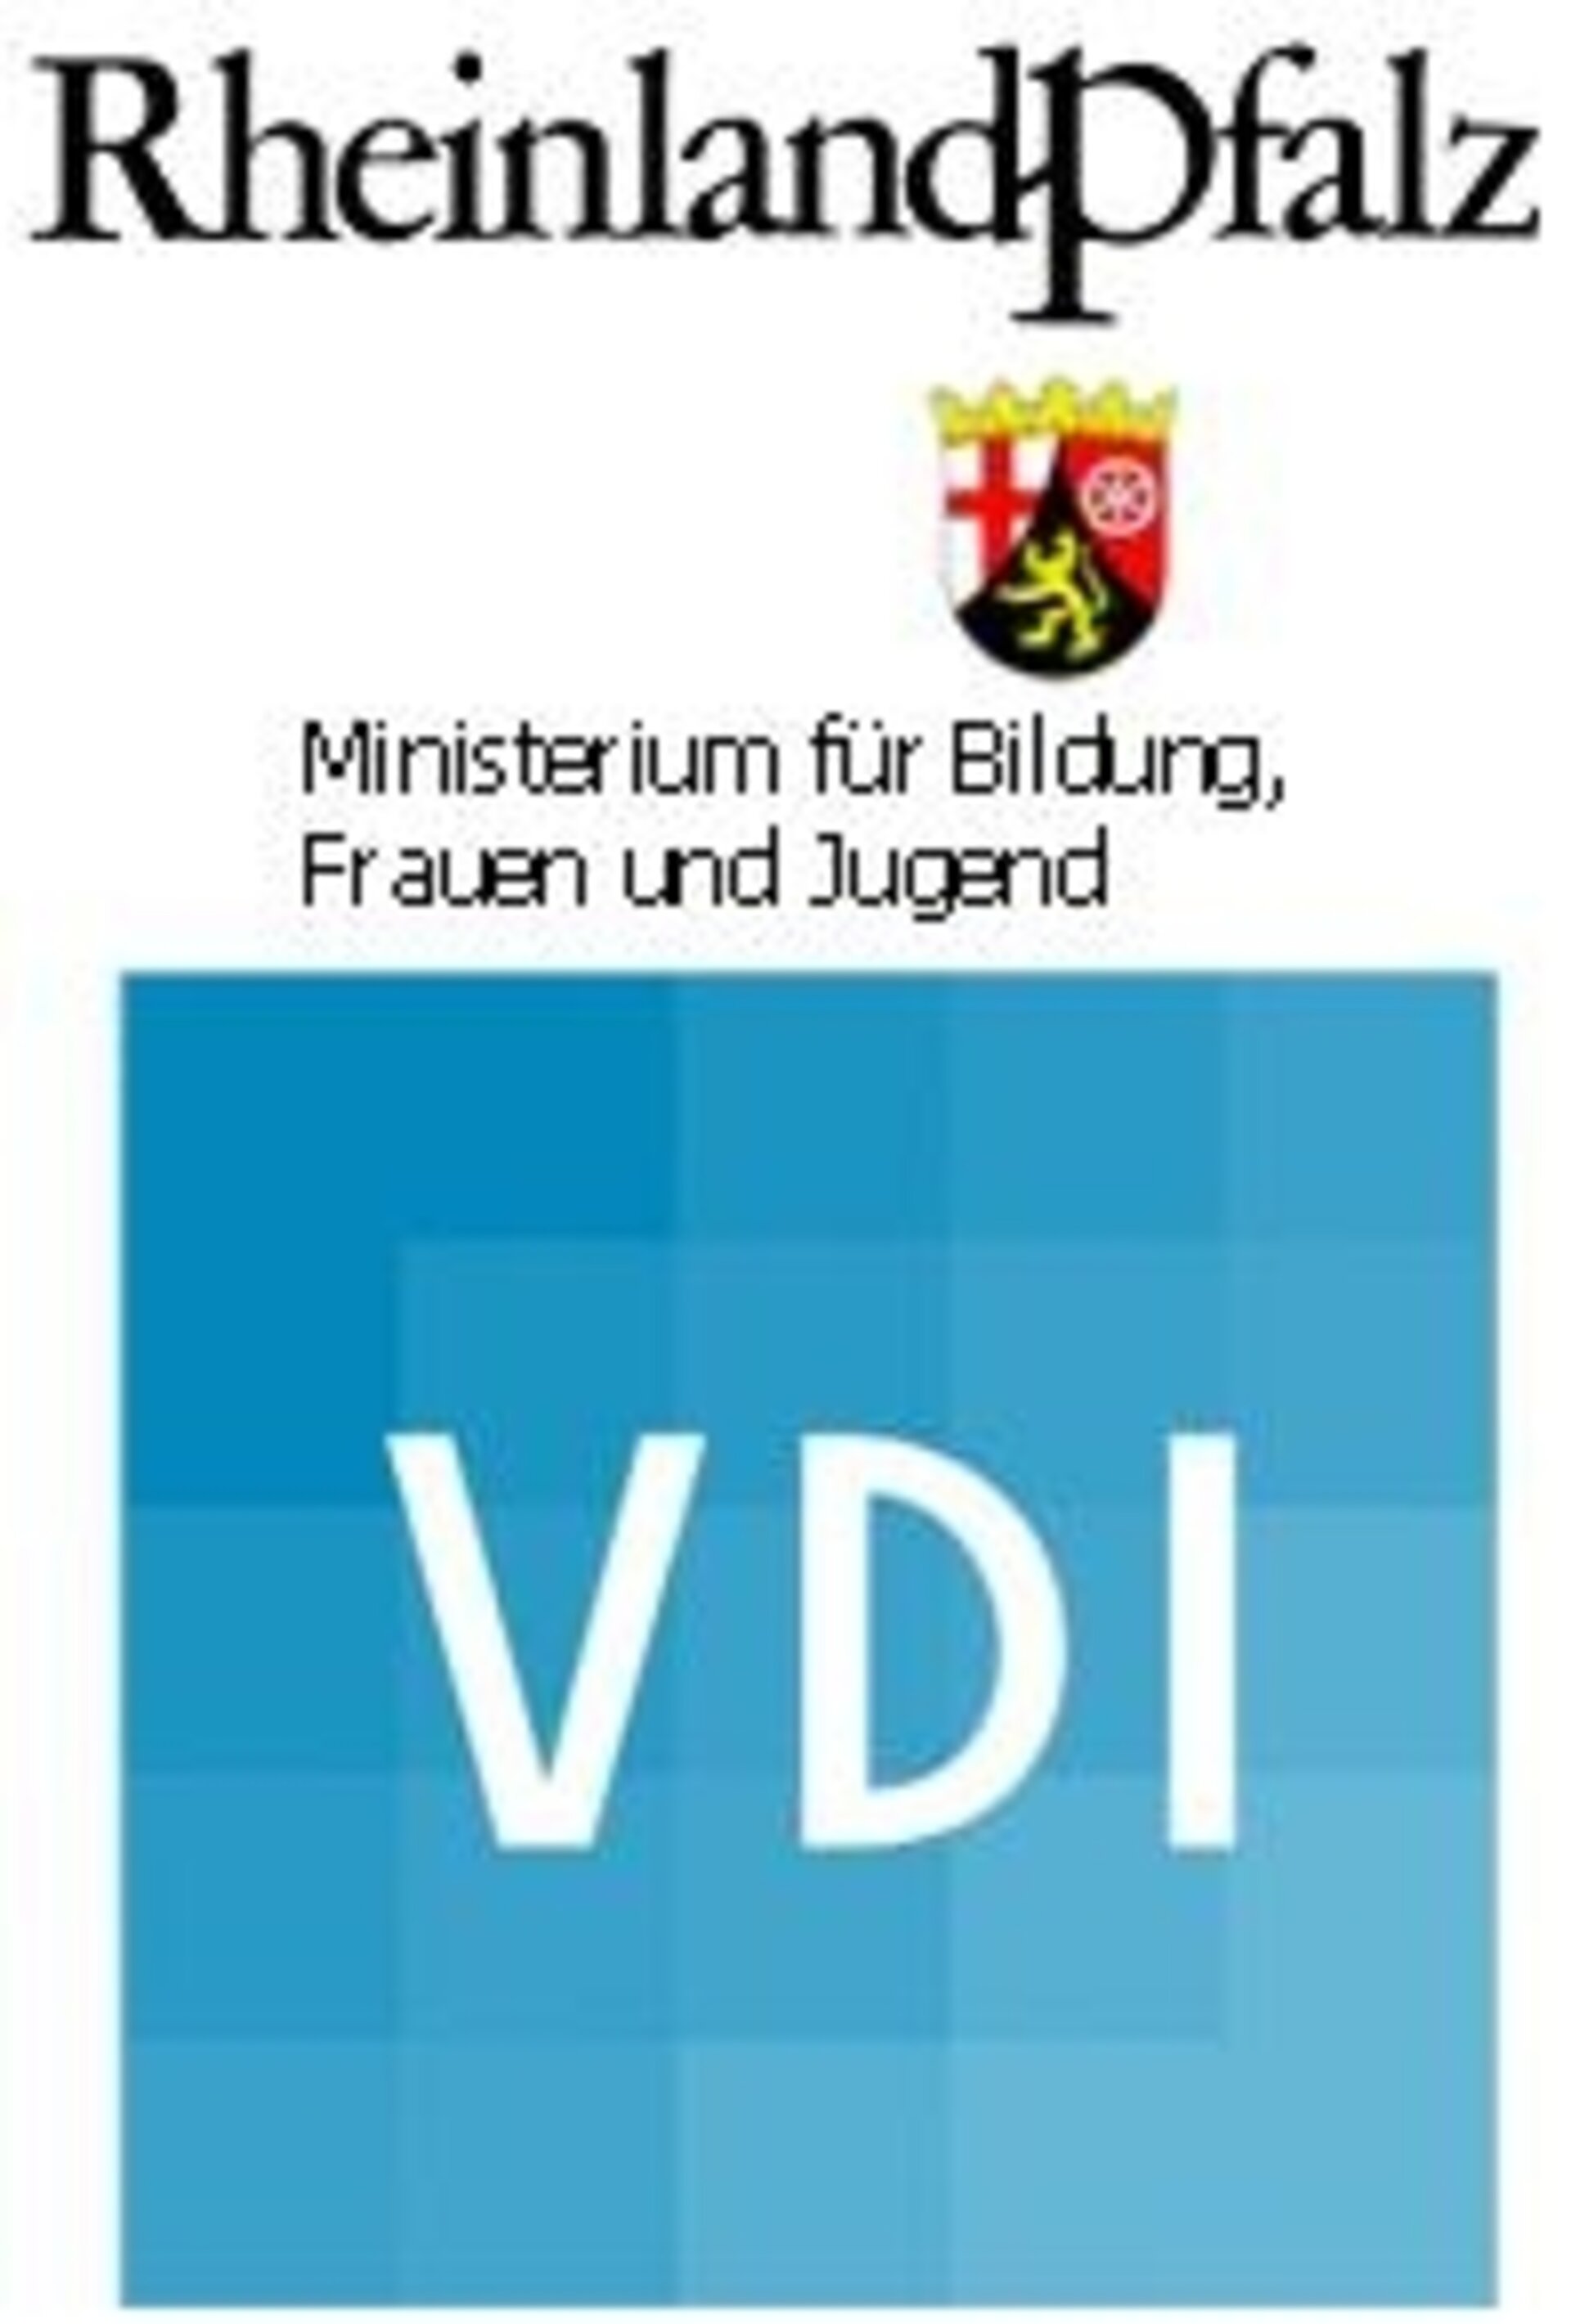 Initiative des VDI und des rheinland-pfälzischen Ministeriums für Bildung, Frauen und Jugend (MBFJ)